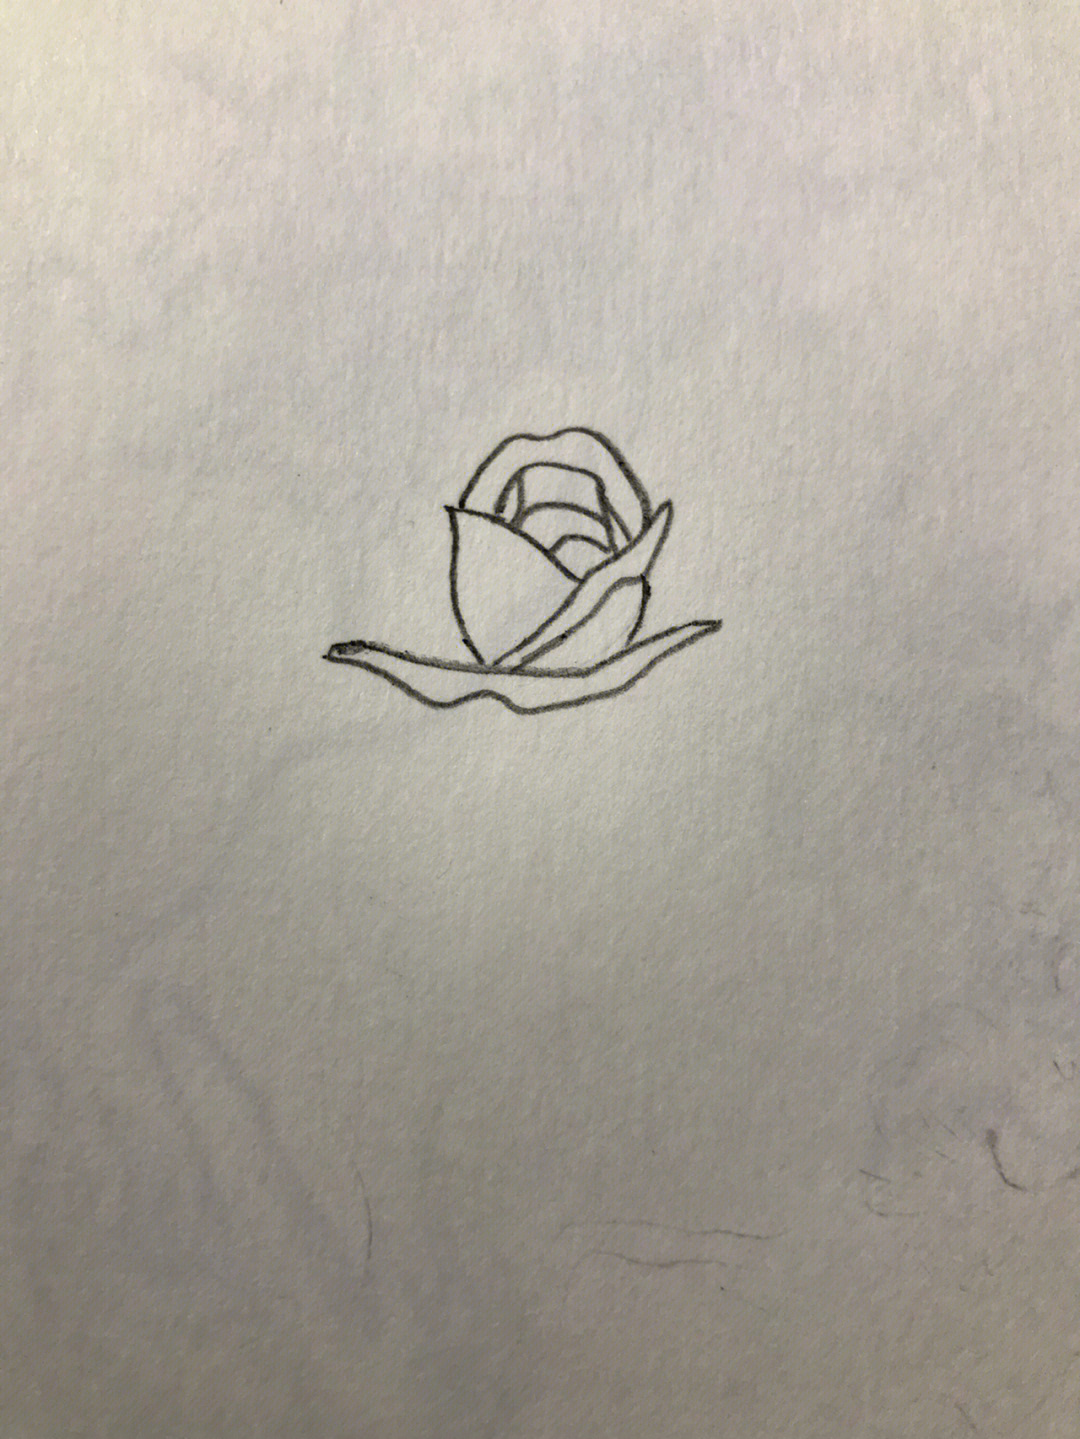 玫瑰花丙烯画教程图片